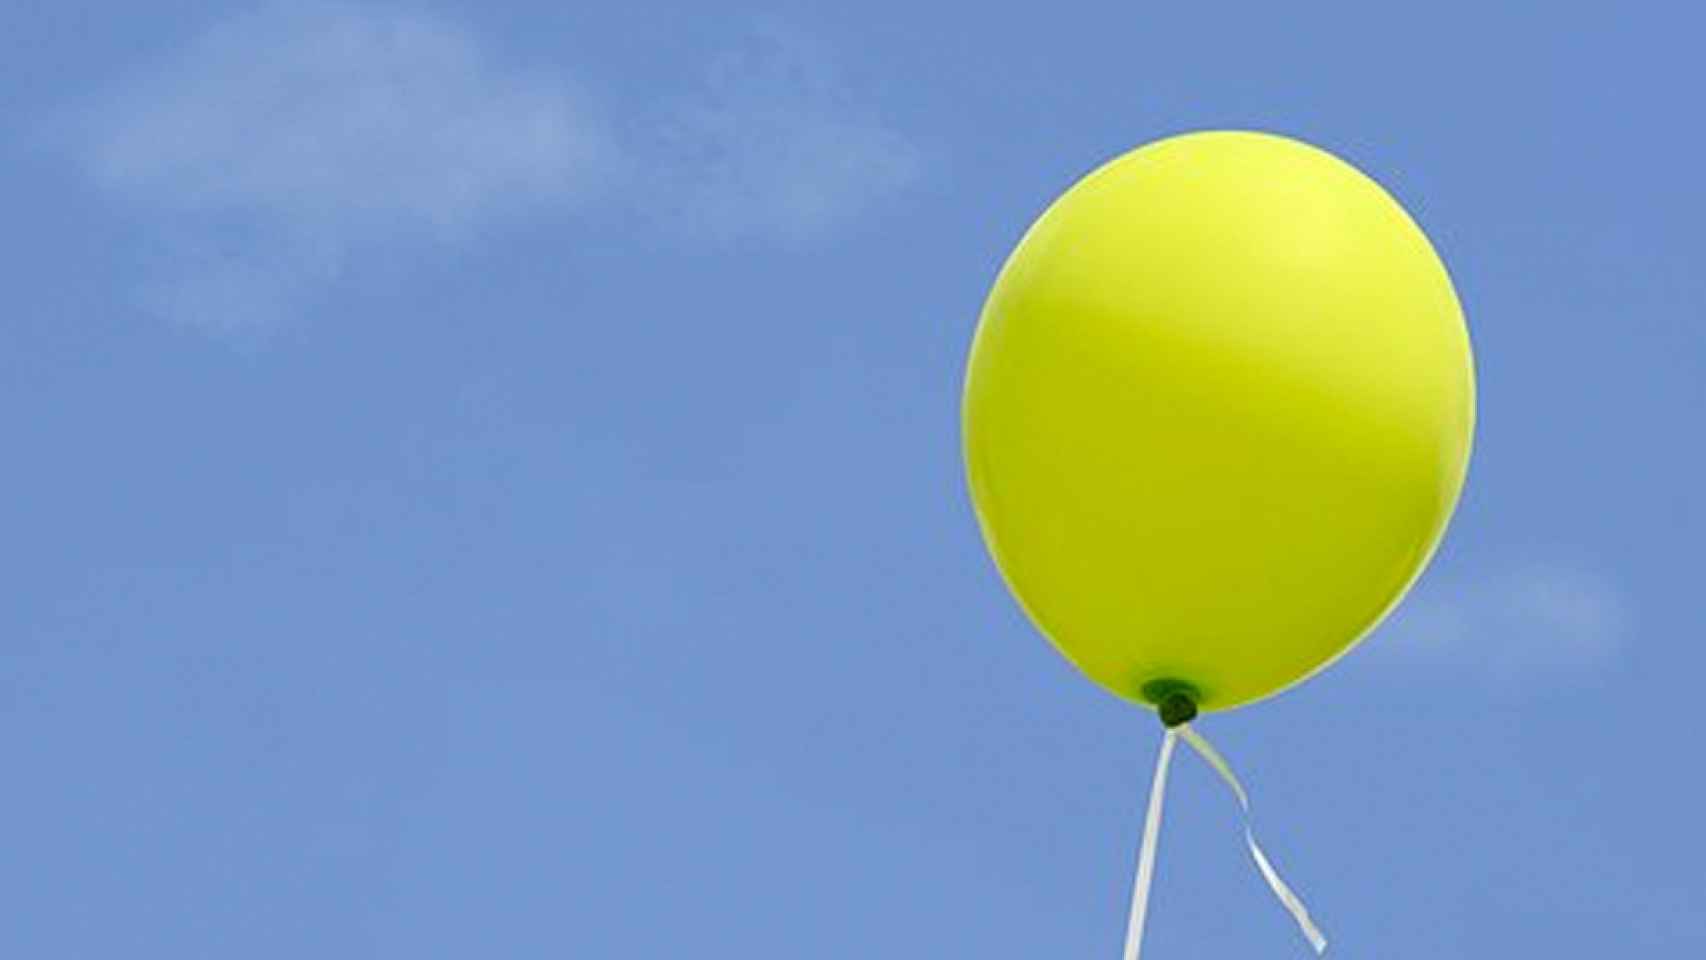 Un globo de helio como el utilizado para esconder el broche / PIXABAY